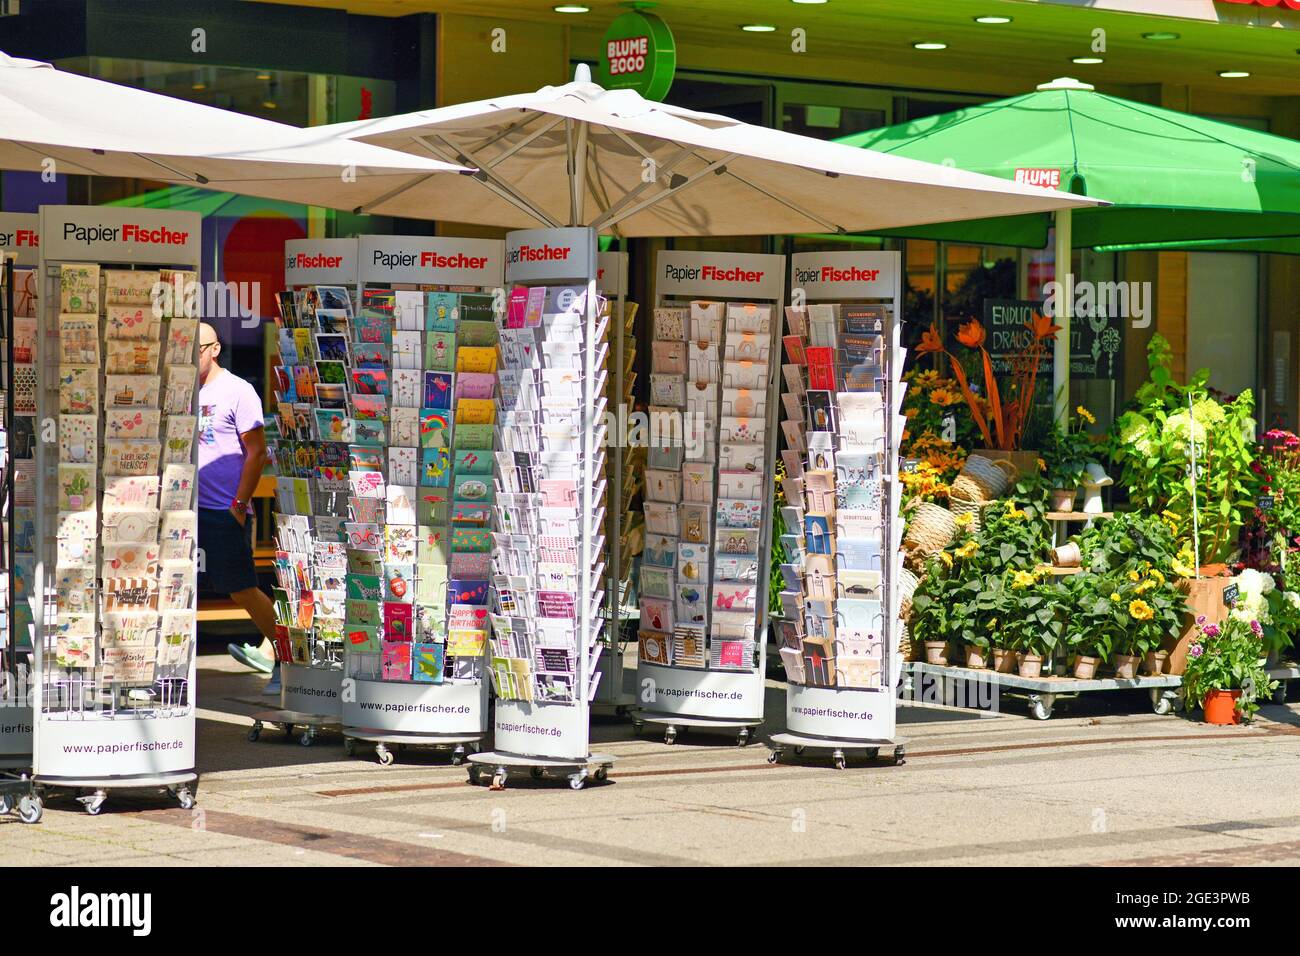 Karlsruhe, Germania - 2021 agosto: Stand di fronte al negozio di cancelleria negozio di souvenir che vende varie cartoline e biglietti d'auguri per il compleanno Foto Stock